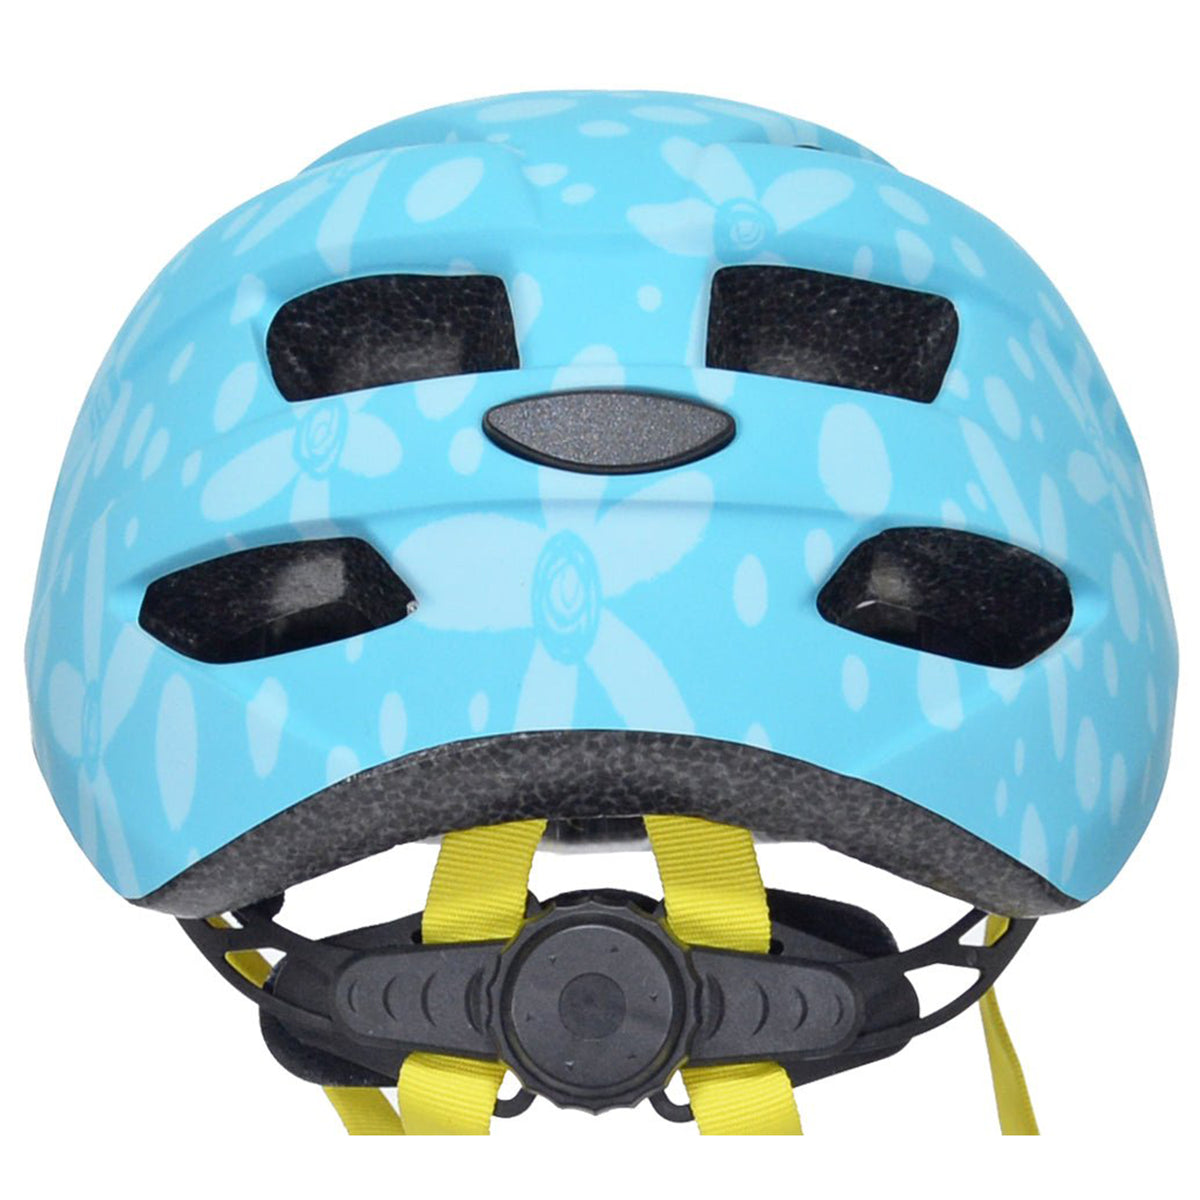 Kent Flower Toddler Multi-Sport Helmet | Helmet for Kids Ages 1-3